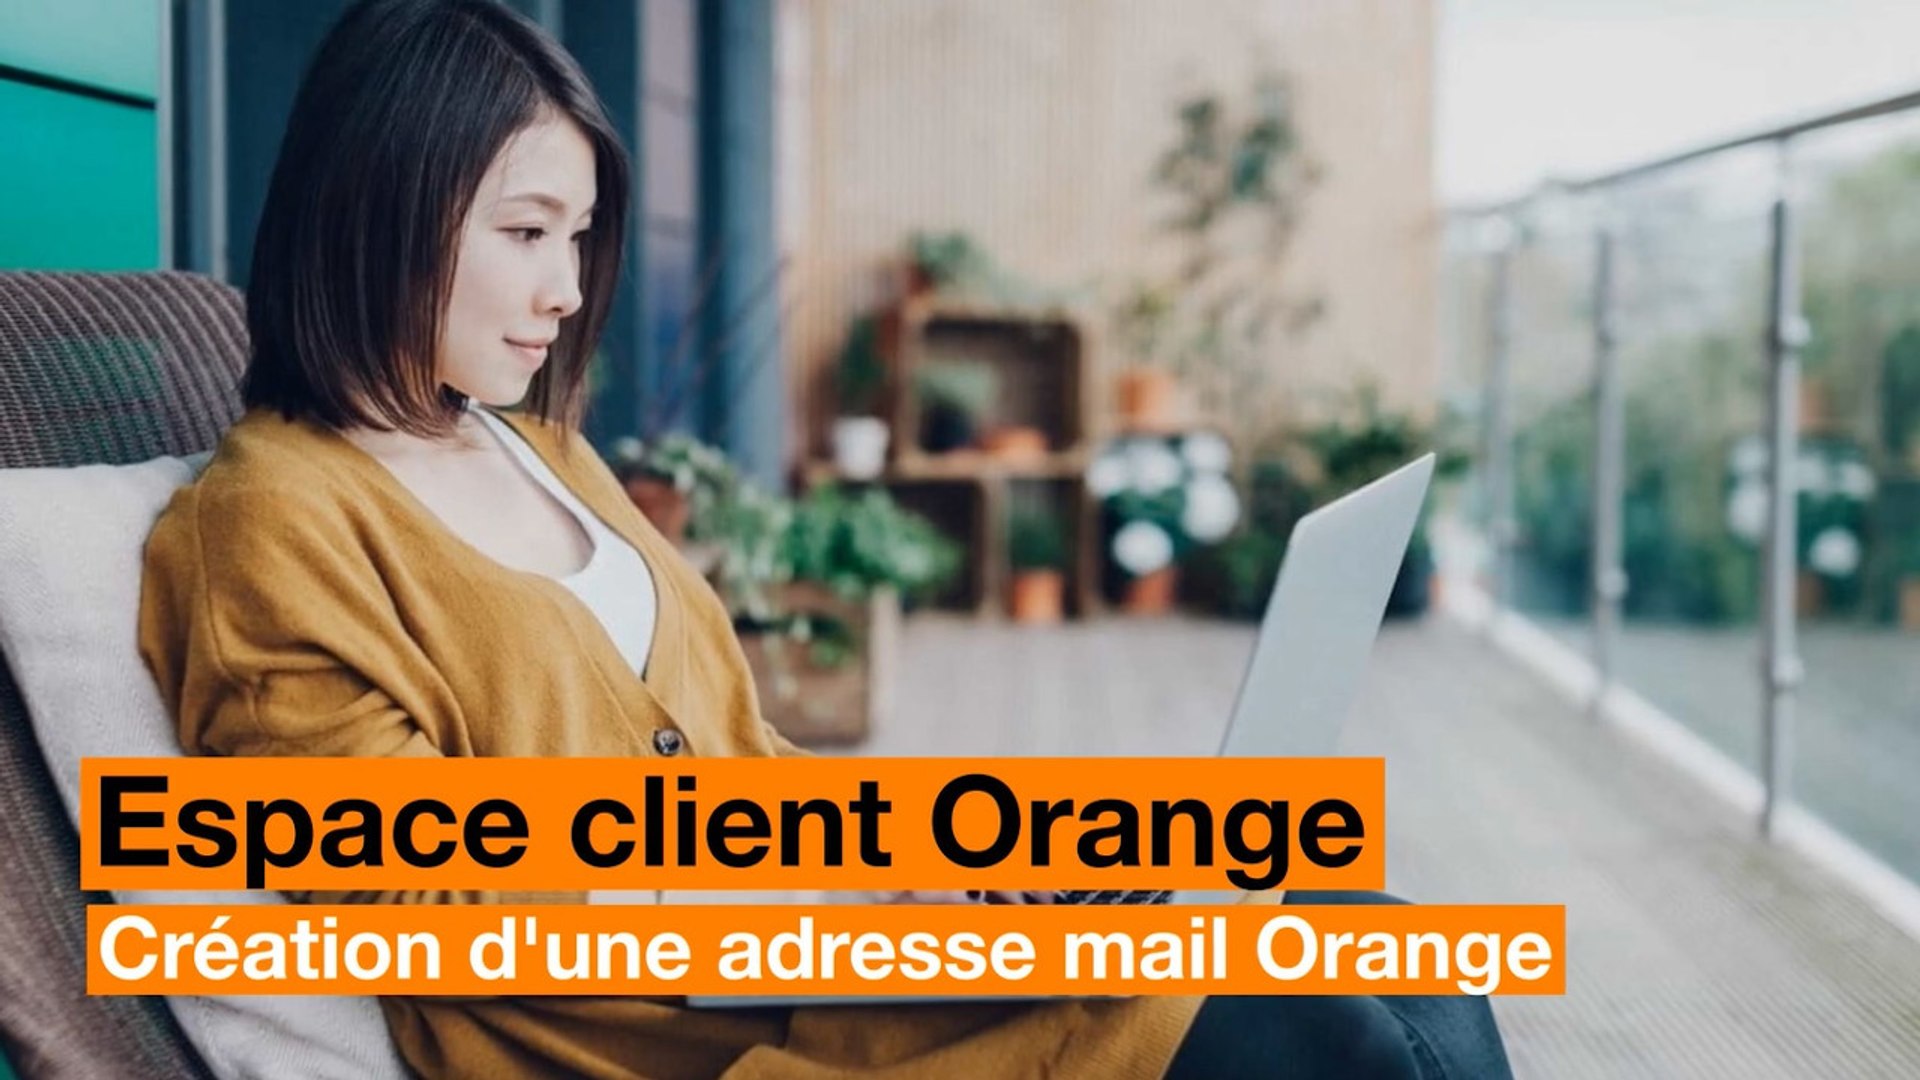 Créer une adresse email Orange depuis l'Espace client - Vidéo Dailymotion